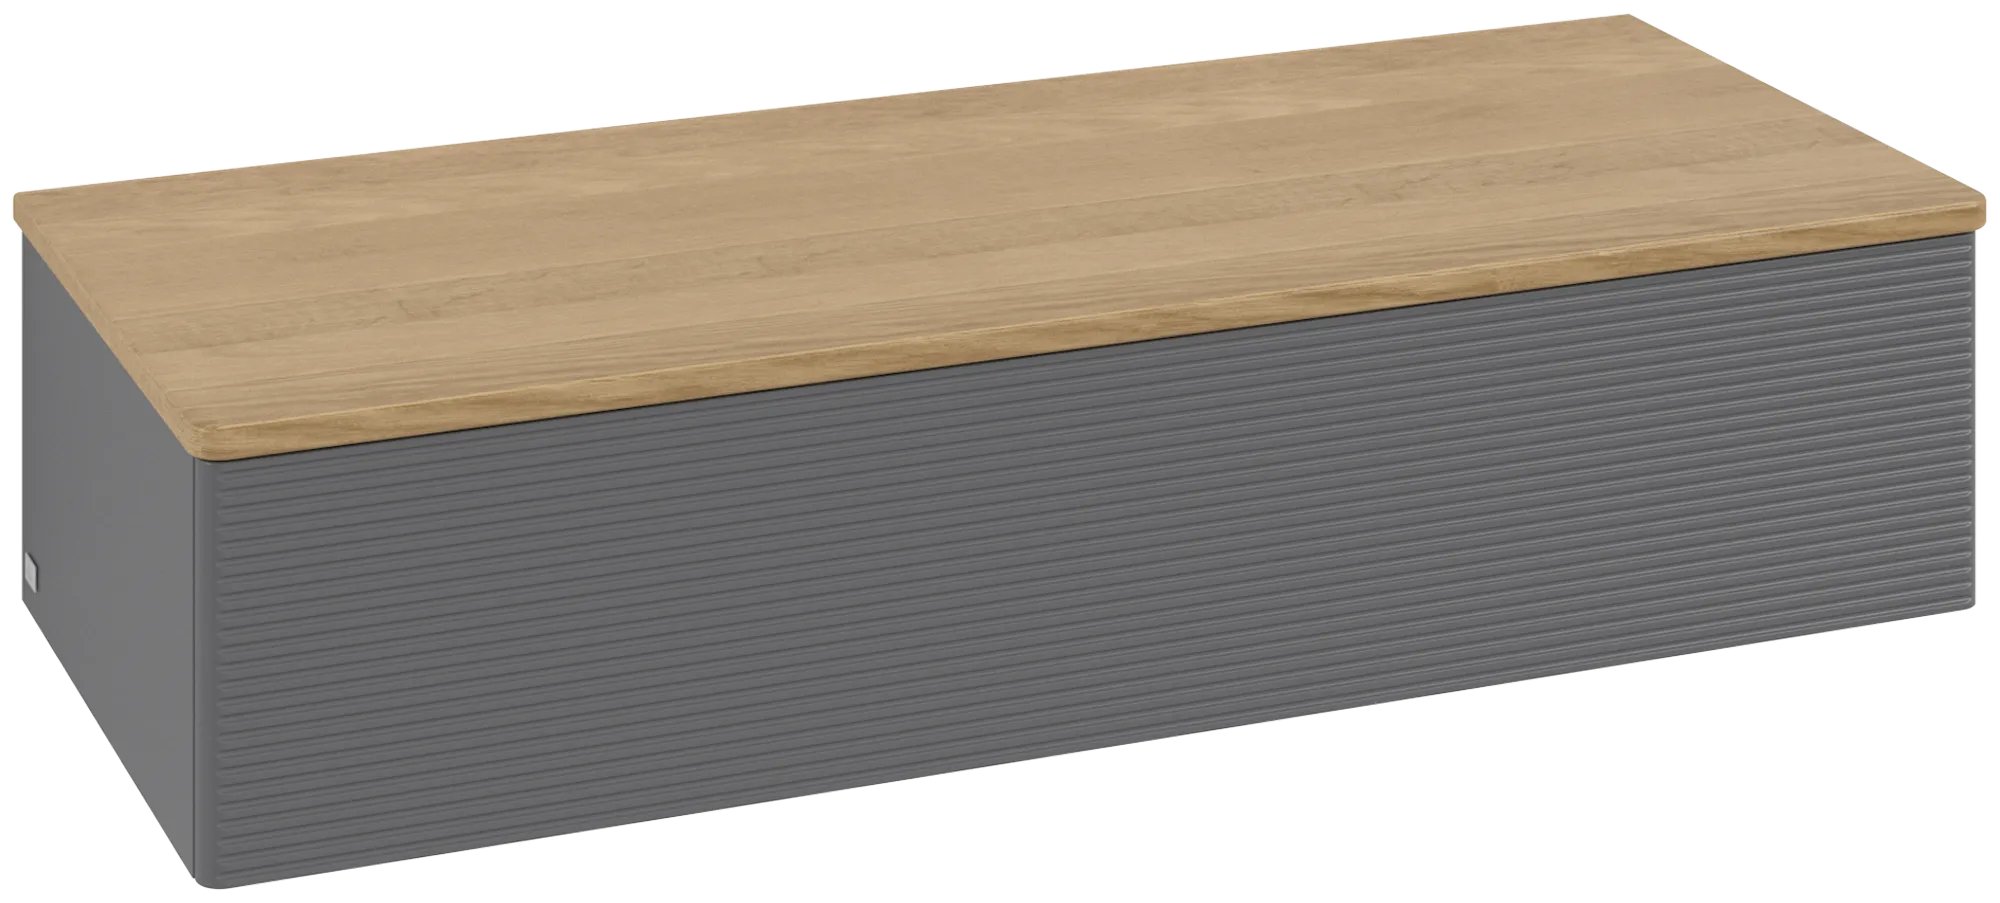 Bild von VILLEROY BOCH Antao Sideboard, 1 Auszug, 1200 x 268 x 500 mm, Front mit Struktur, Anthracite Matt Lacquer / Honey Oak #K41101GK